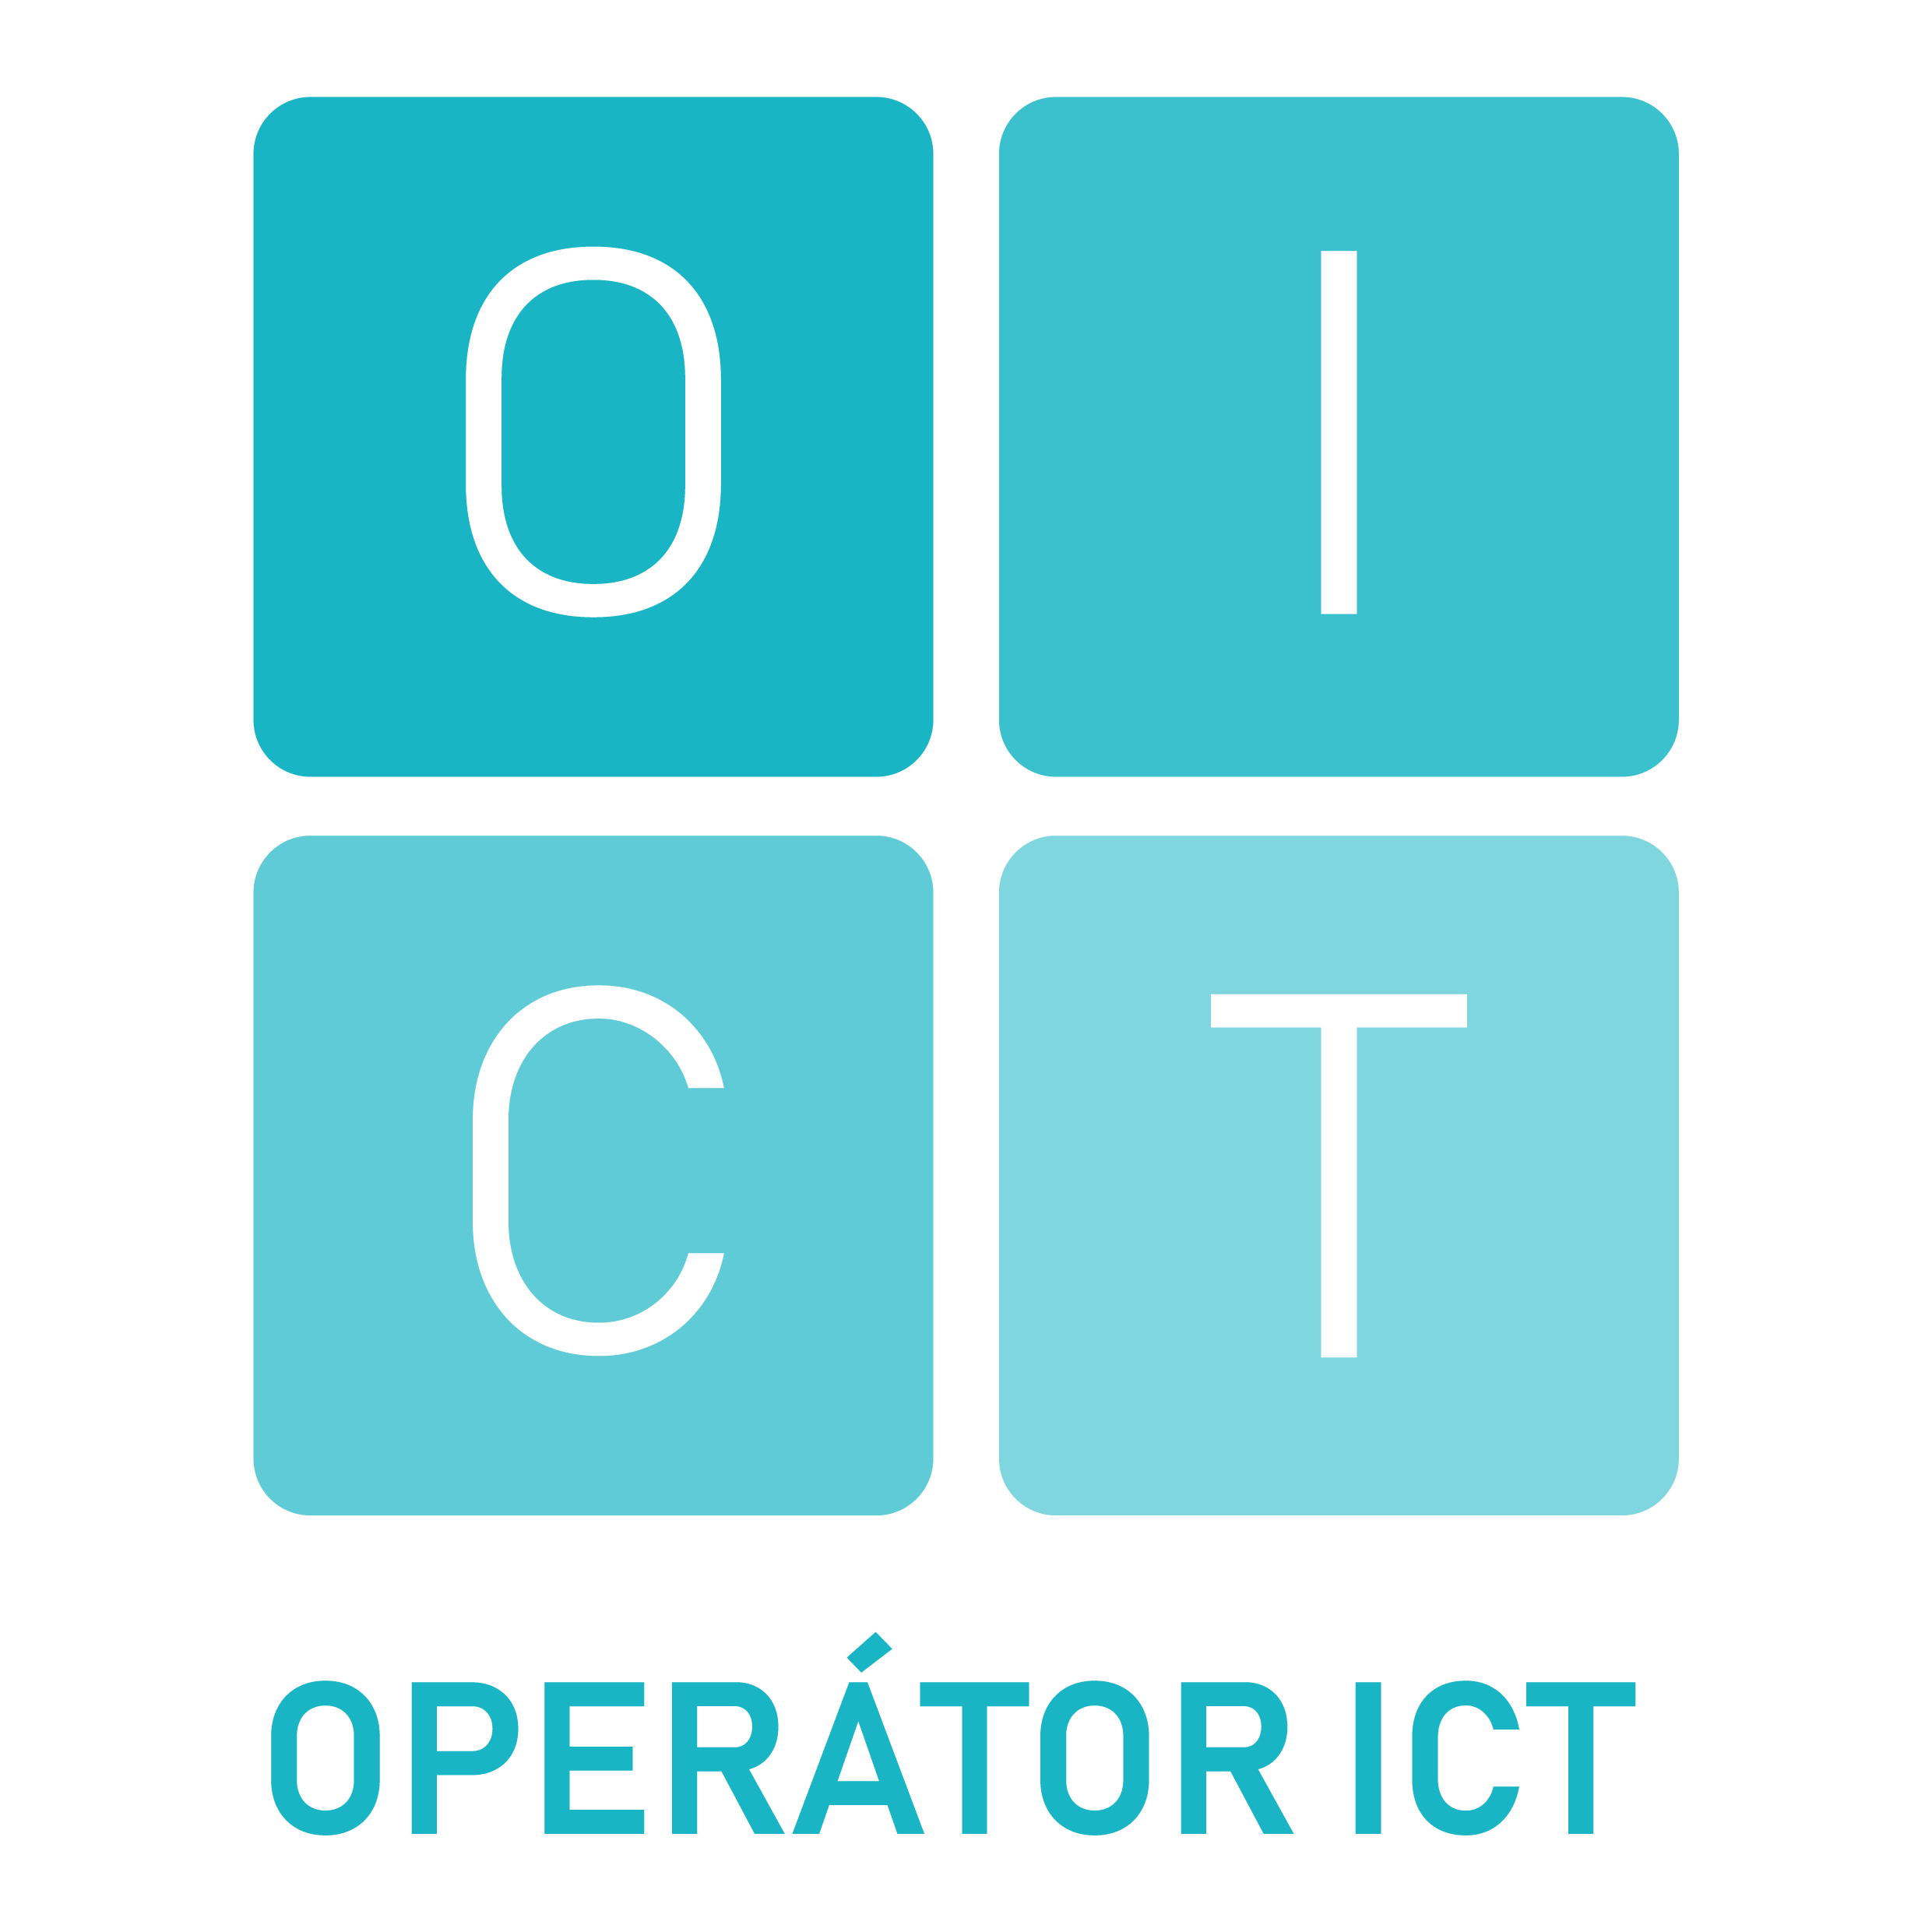 operator_ict